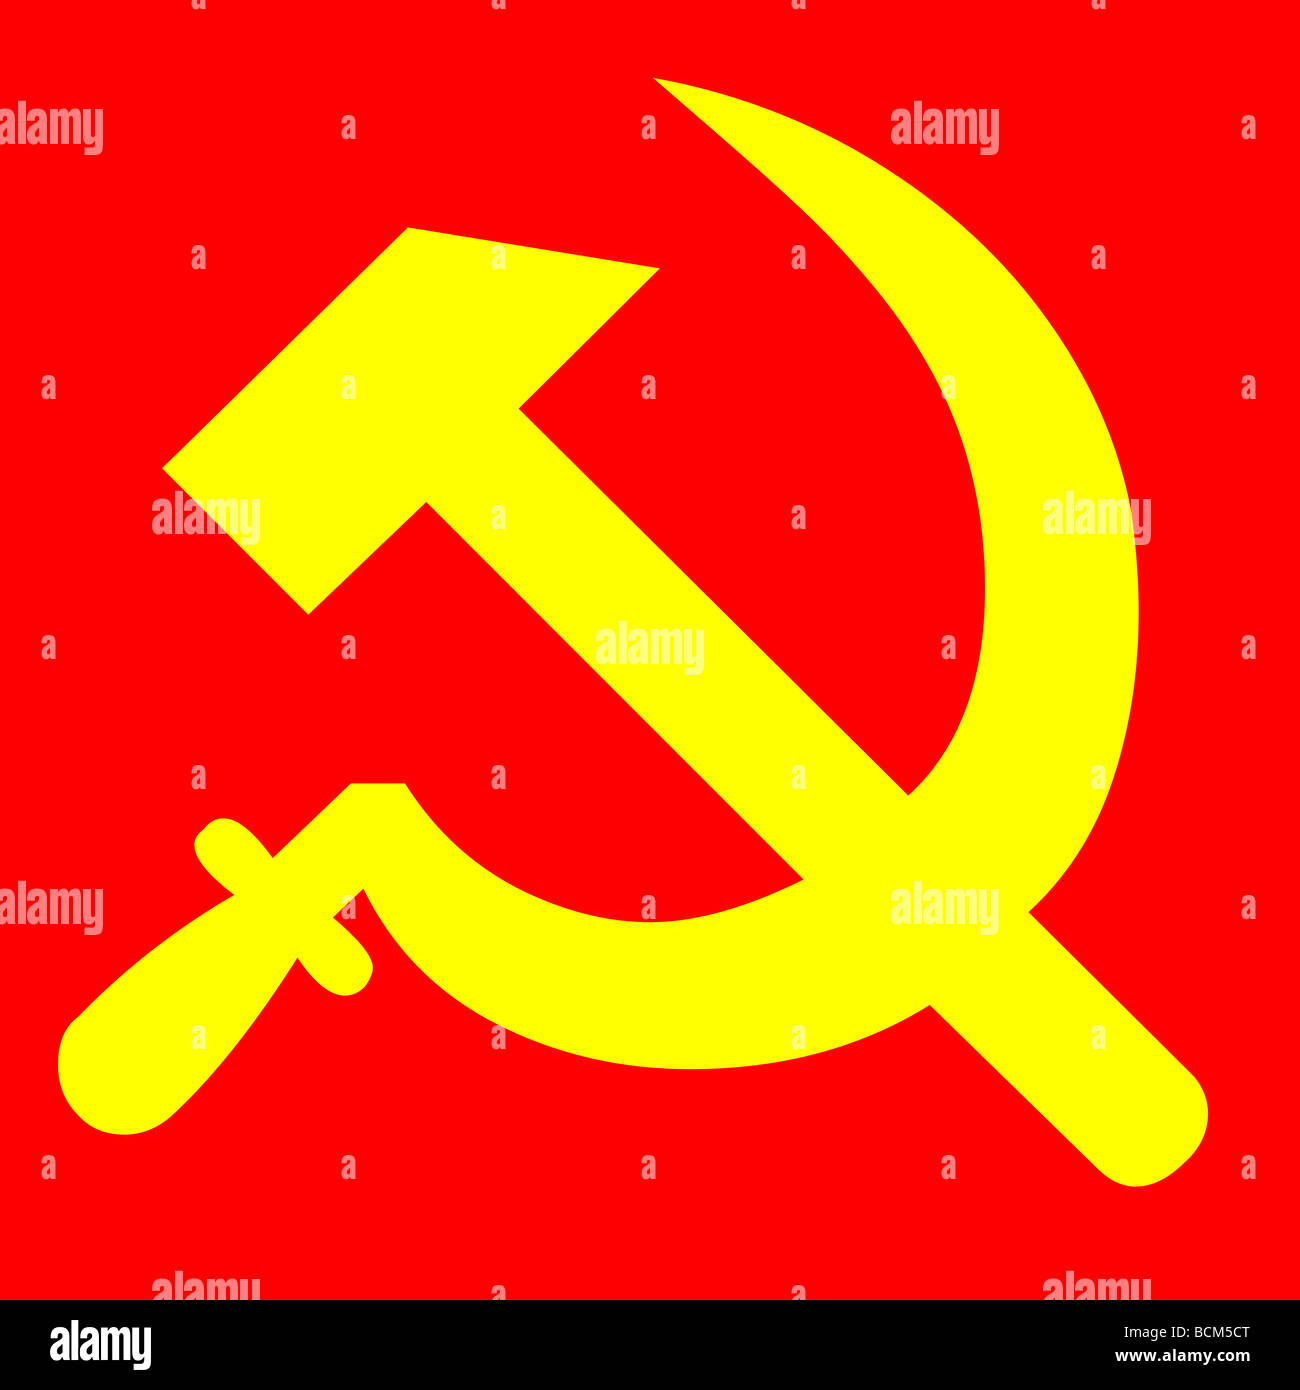 Kommunismus-Symbol - Hammer und Sichel Stockfotografie - Alamy